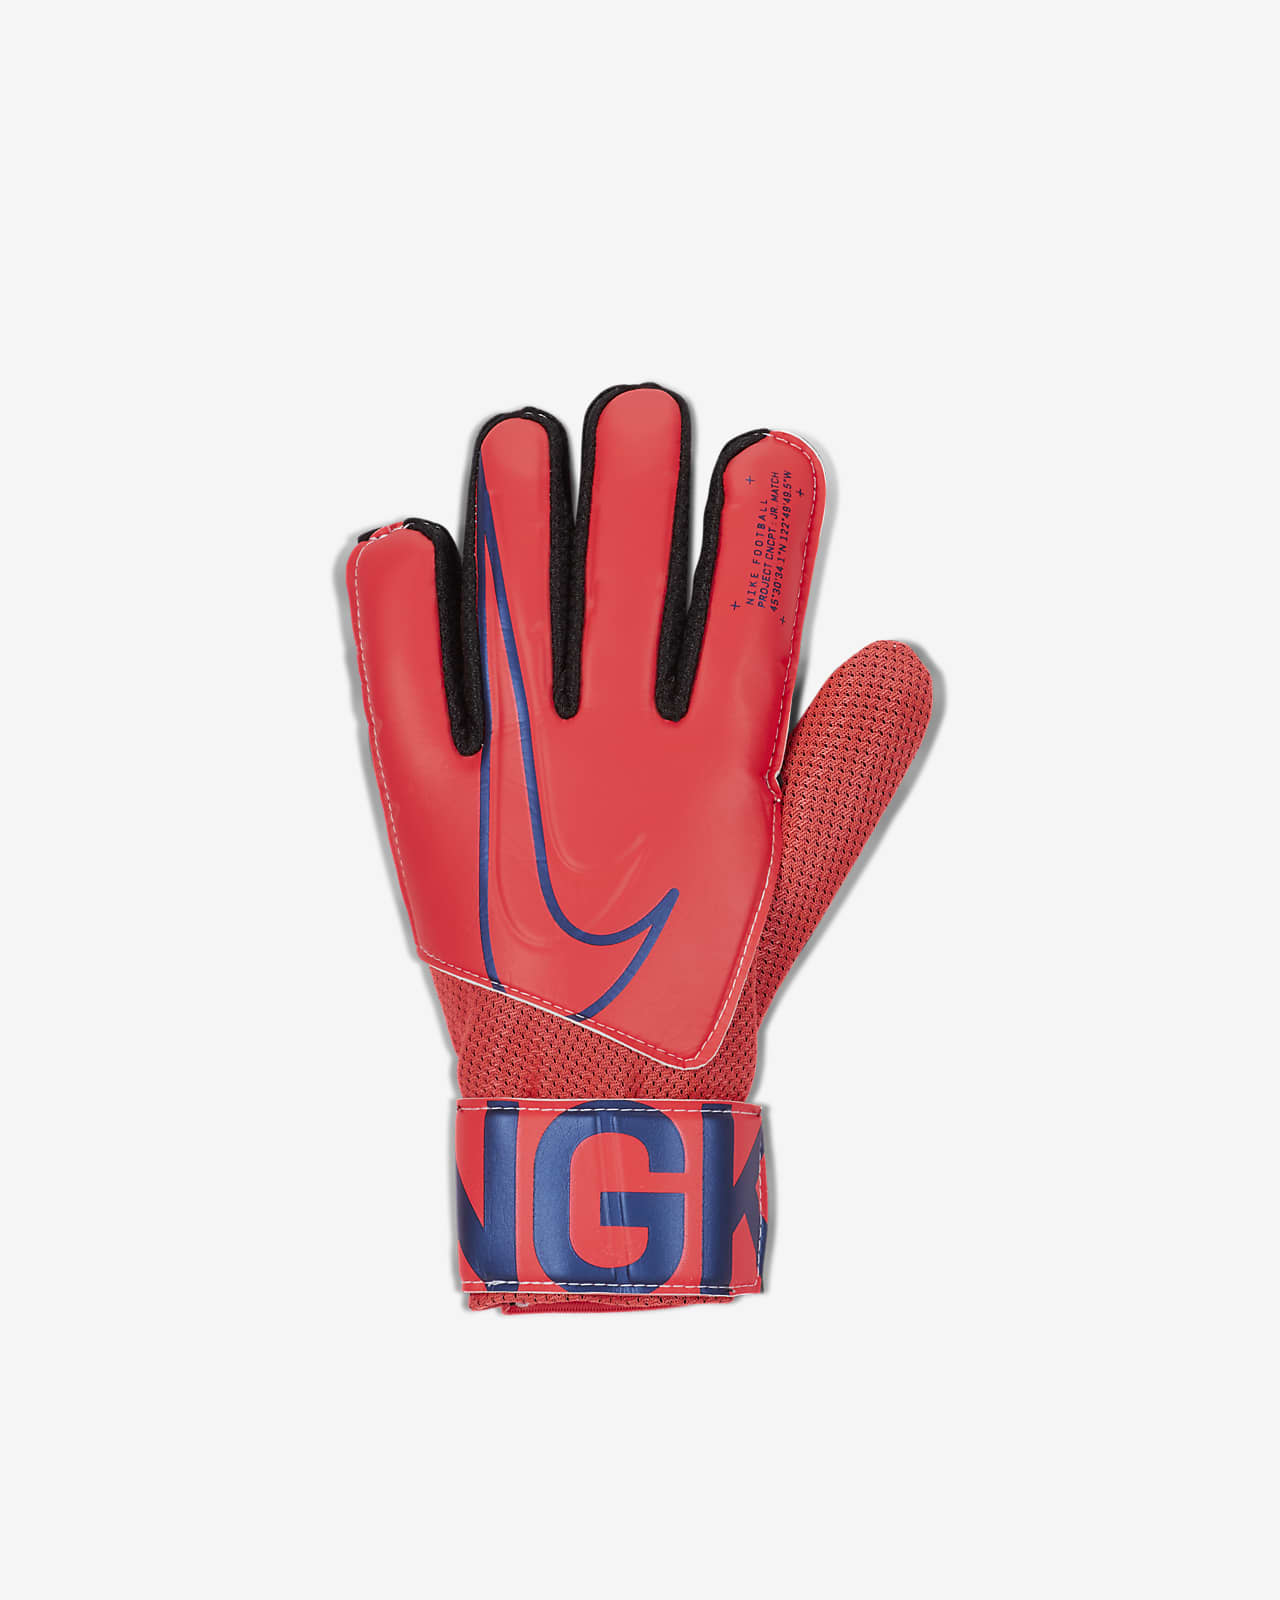 cr7 gloves